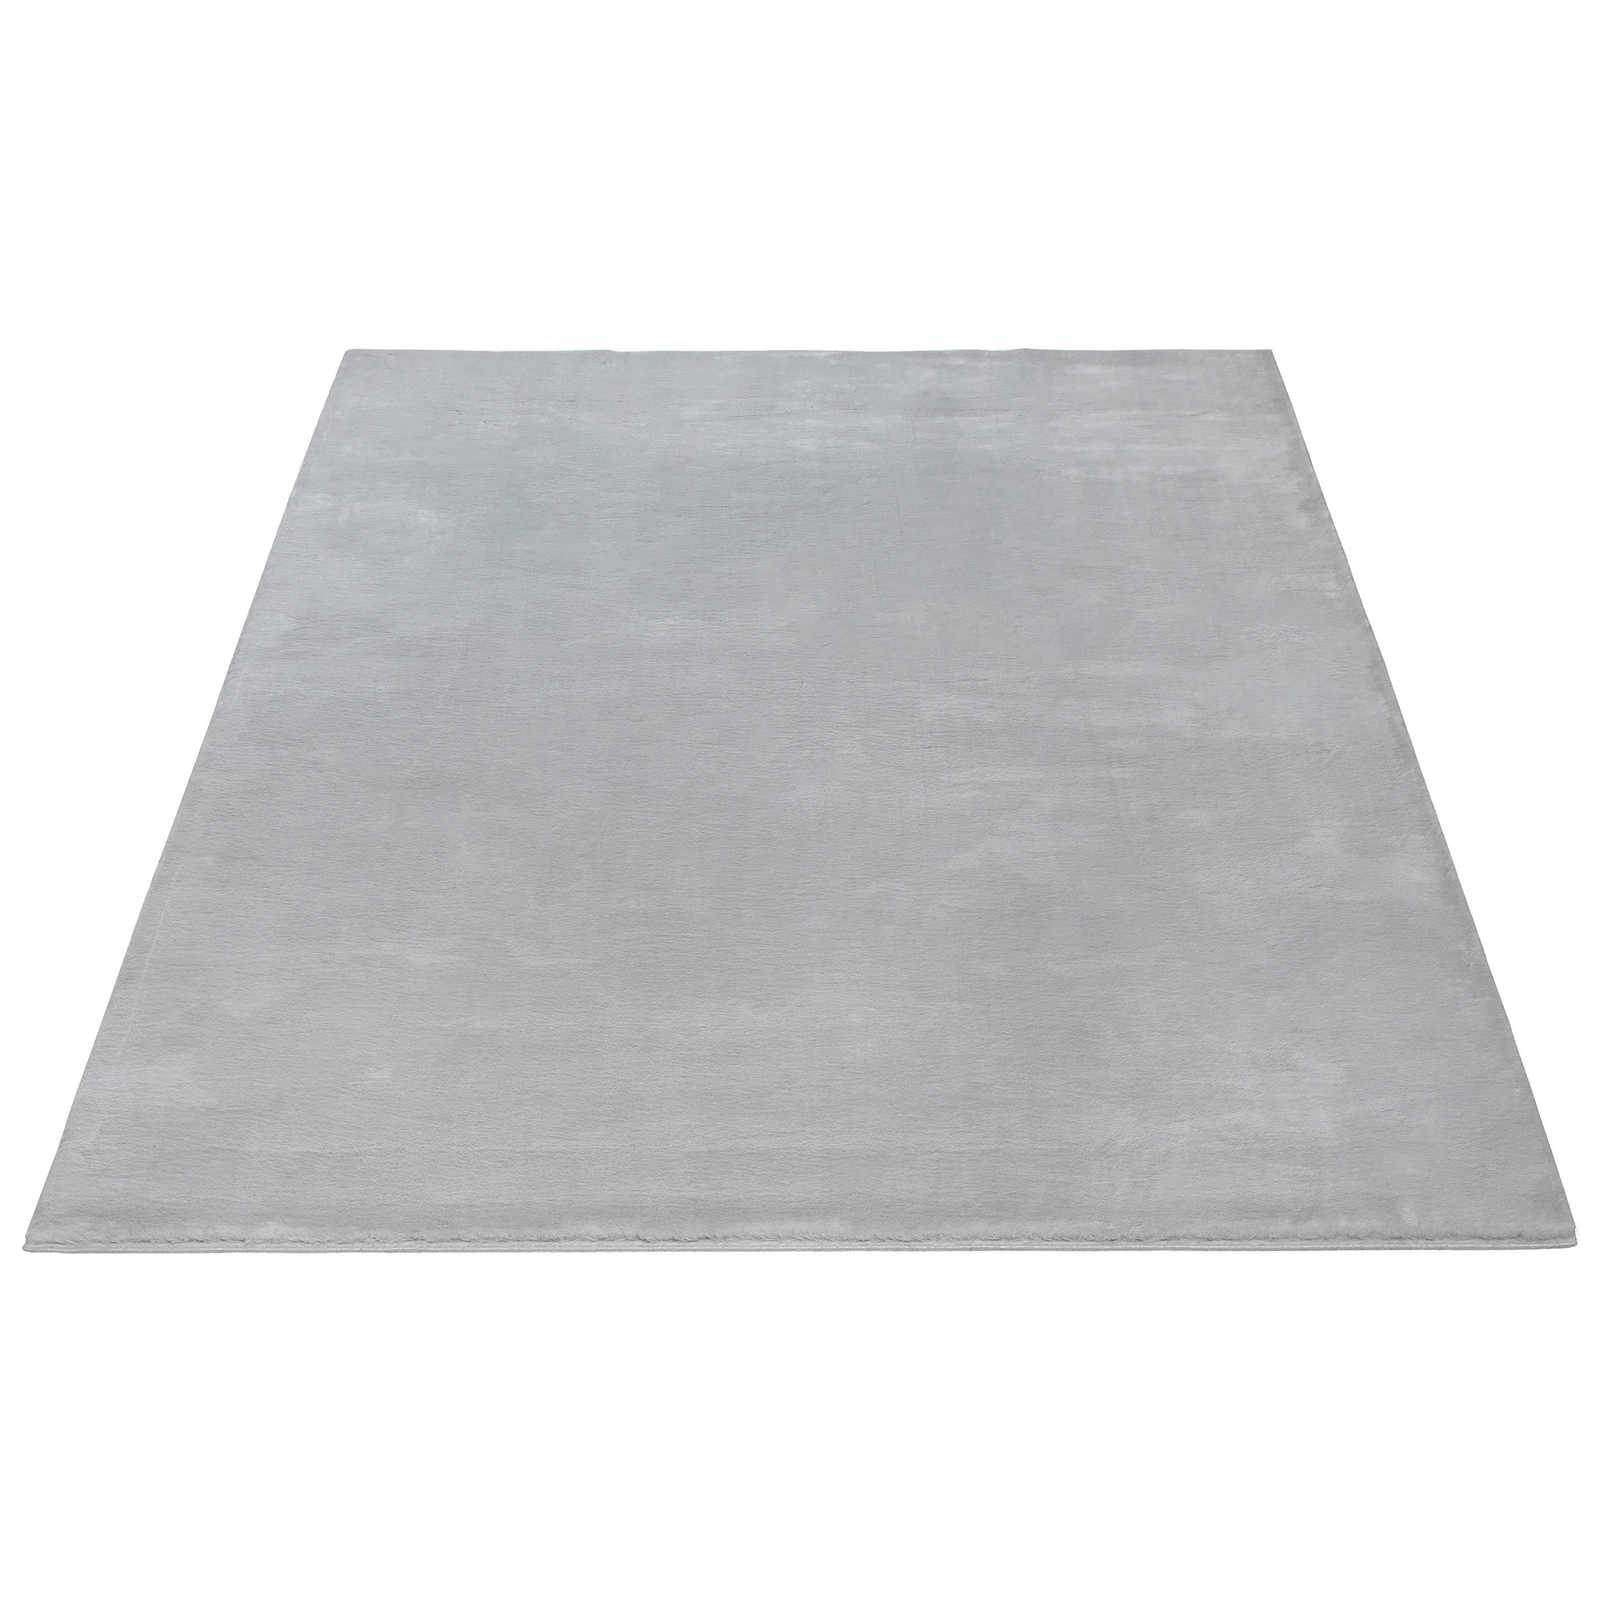 Kuscheliger Hochflor Teppich in sanften Grau – 290 x 200 cm
